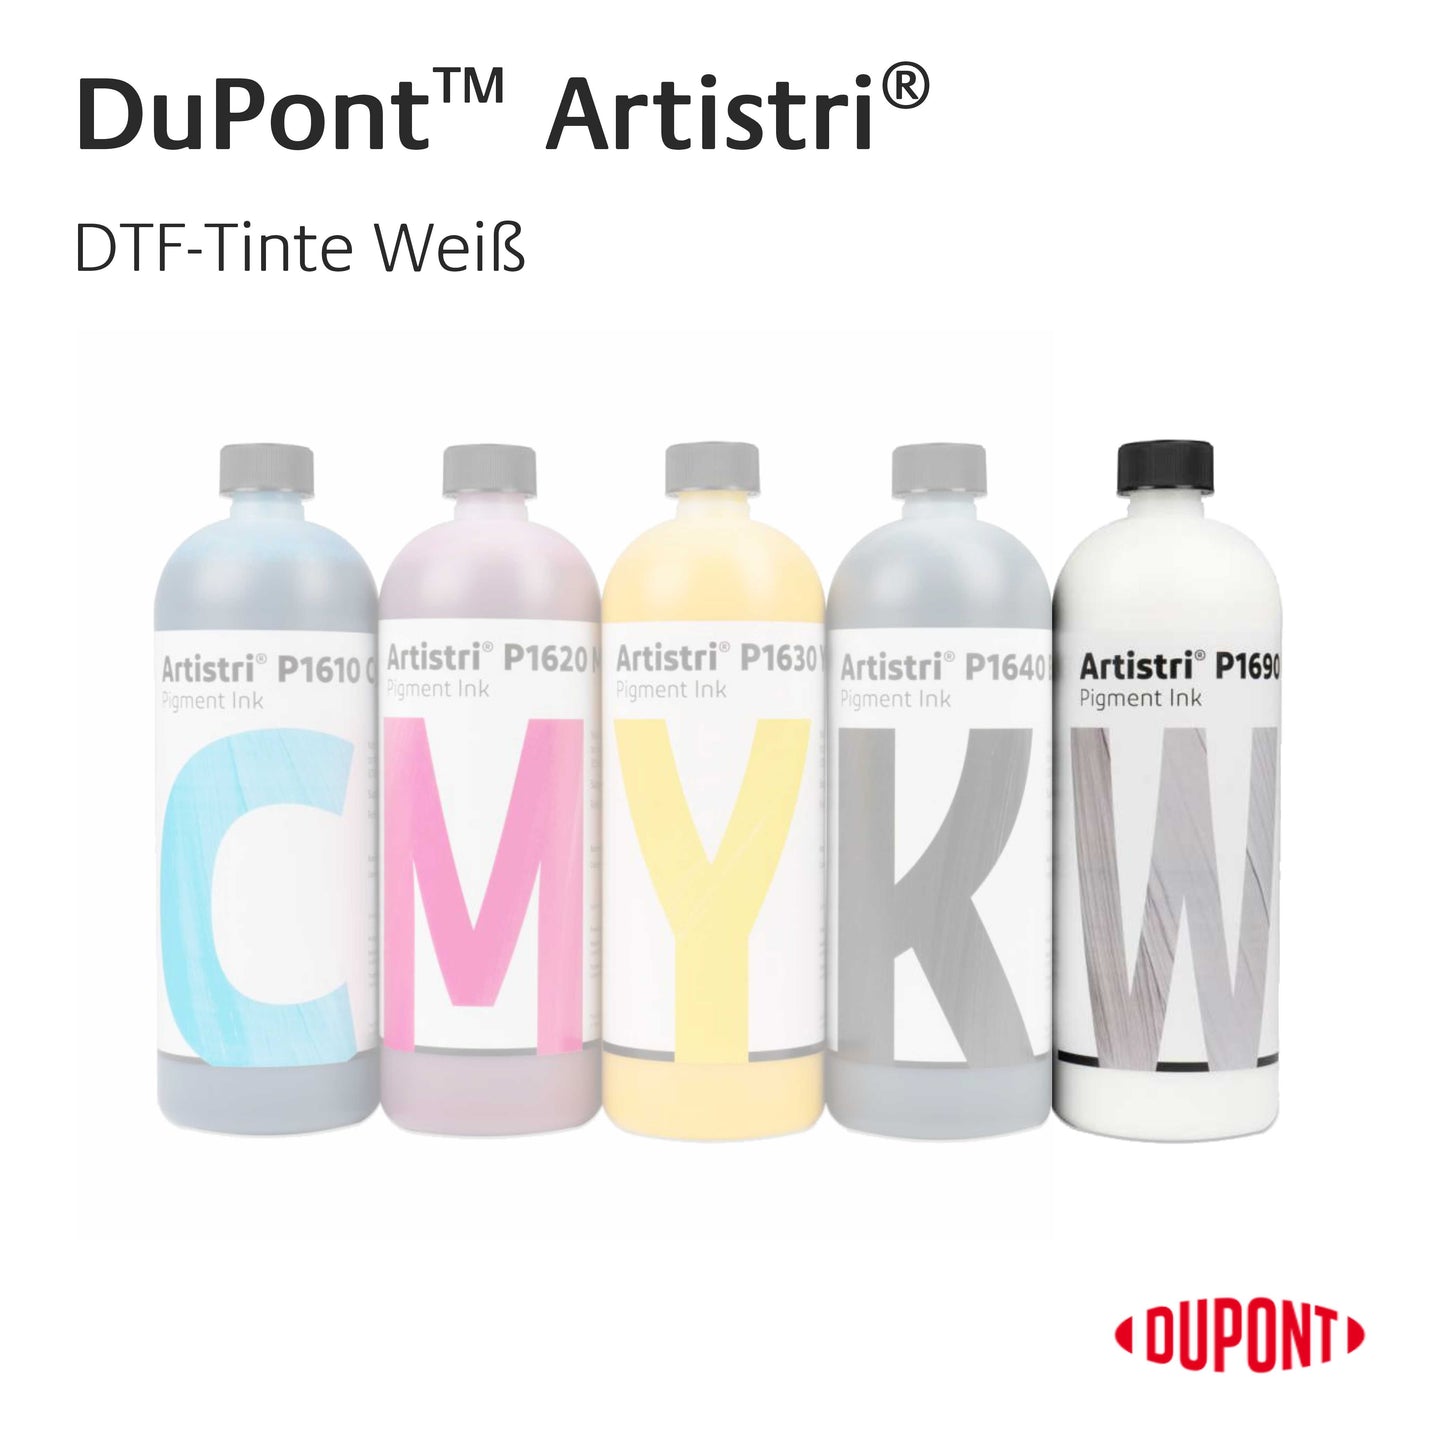 DuPont™ Artistri® Premium DTF-Tinten